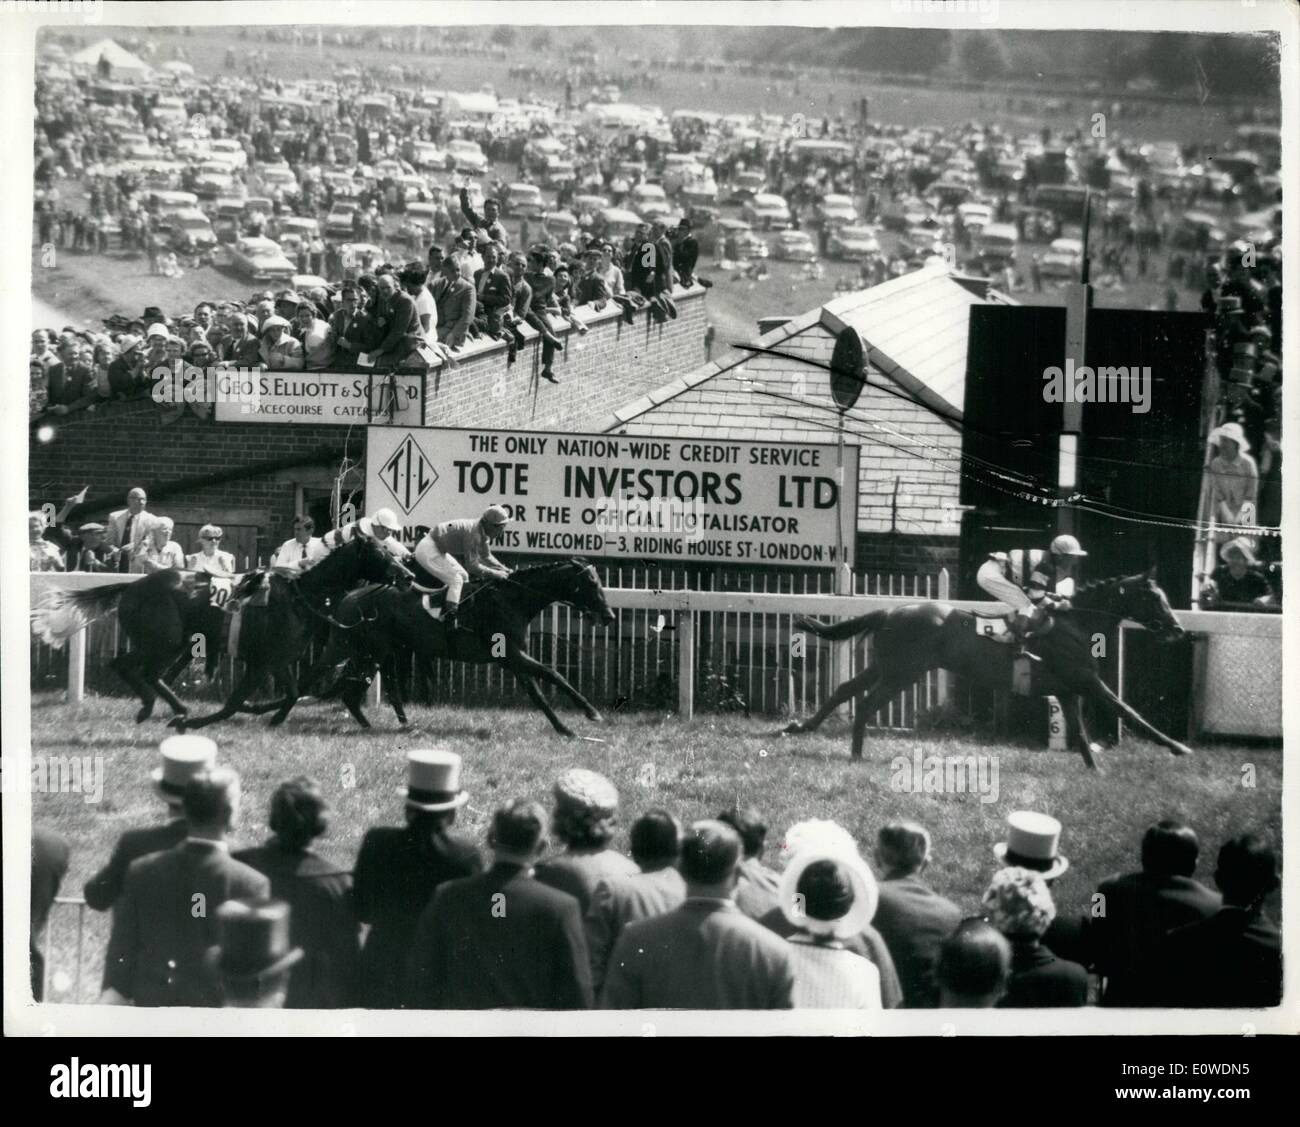 Giugno 06, 1962 - Sensazionale Derby 1962: Il 1962 Derby è stato vinto da 22-1 Larkspur di Irlanda - e del 26 operatori sei finito riderless, compreso il preferito Hethersett e la regina del Jockey W.H. Carr, in uno dei peggiori incidenti visto a Epsom, oggi. Uno dei cavalli, re canuto, si è rotto una gamba di un dovevano essere distrutti vicino la scena dell'incidente: giù per la collina verso Tattenham Corner, sei Furlongs dal traguardo. Mostra immagine: la finitura, mostrando Larkspur (N.Sellwood) seguita da Arcor (Poineelet), riderless Crossen e Le Cantilien (St Foto Stock